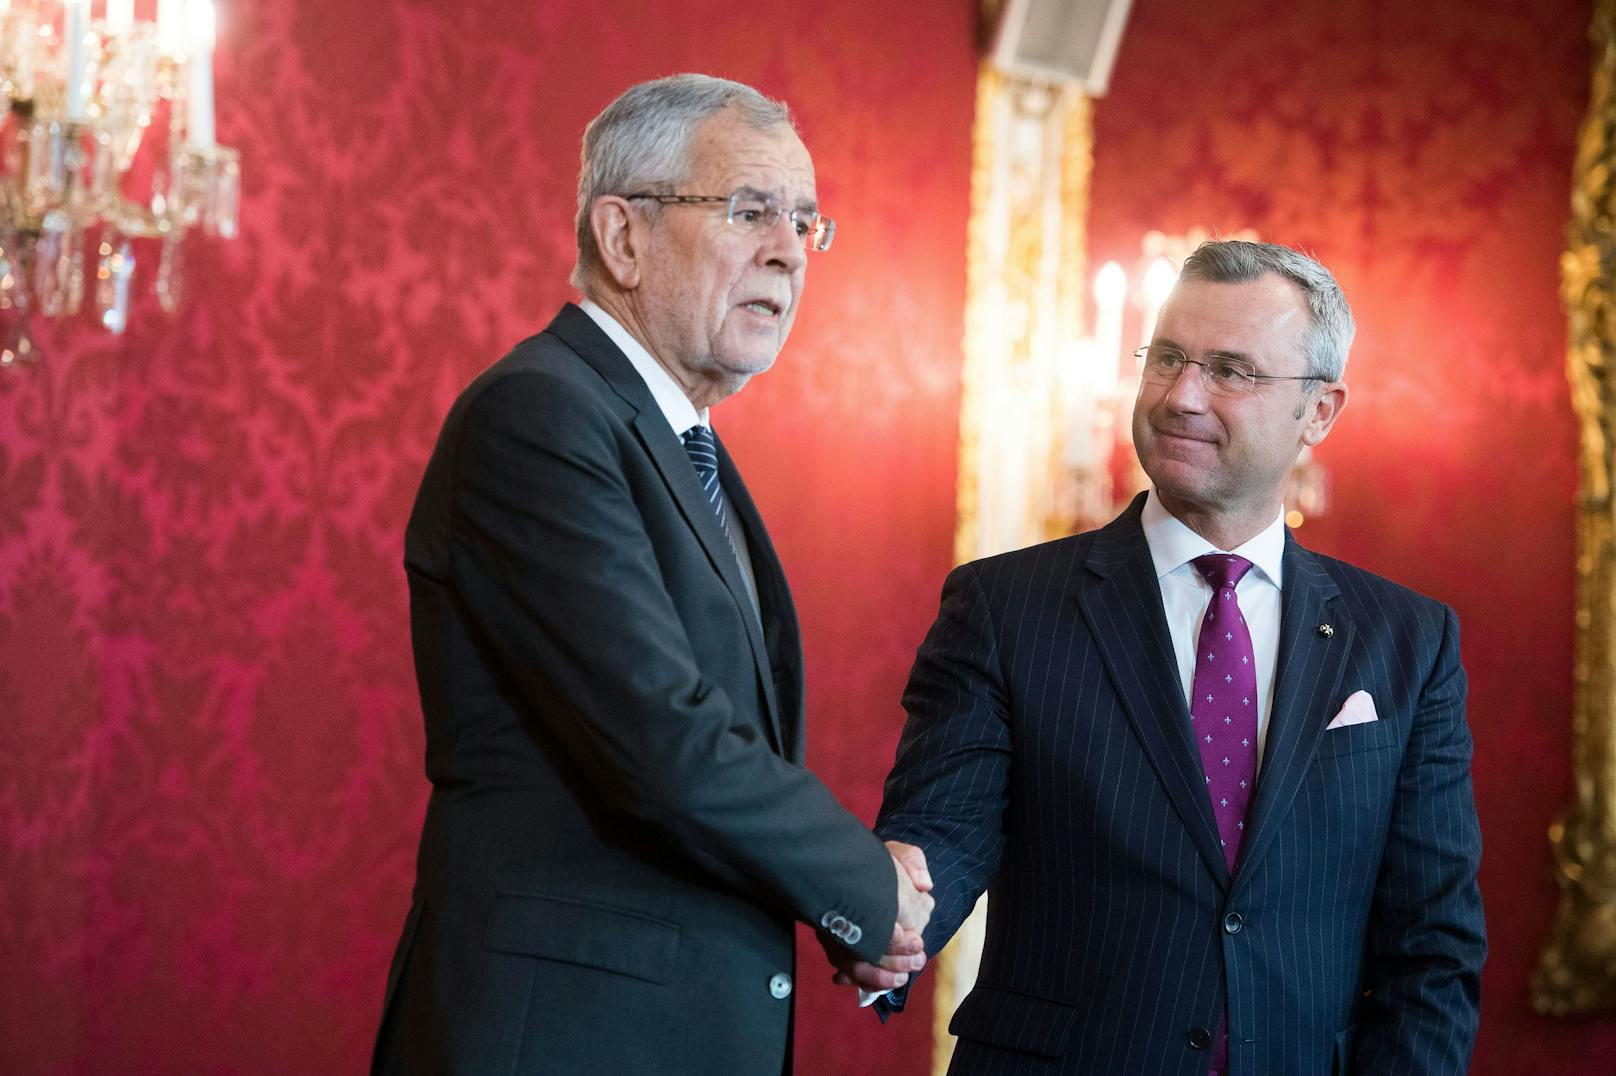 FPÖ-Langzeitkandidat Norbert Hofer will Nachfolger von Bundespräsident Van der Bellen werden.